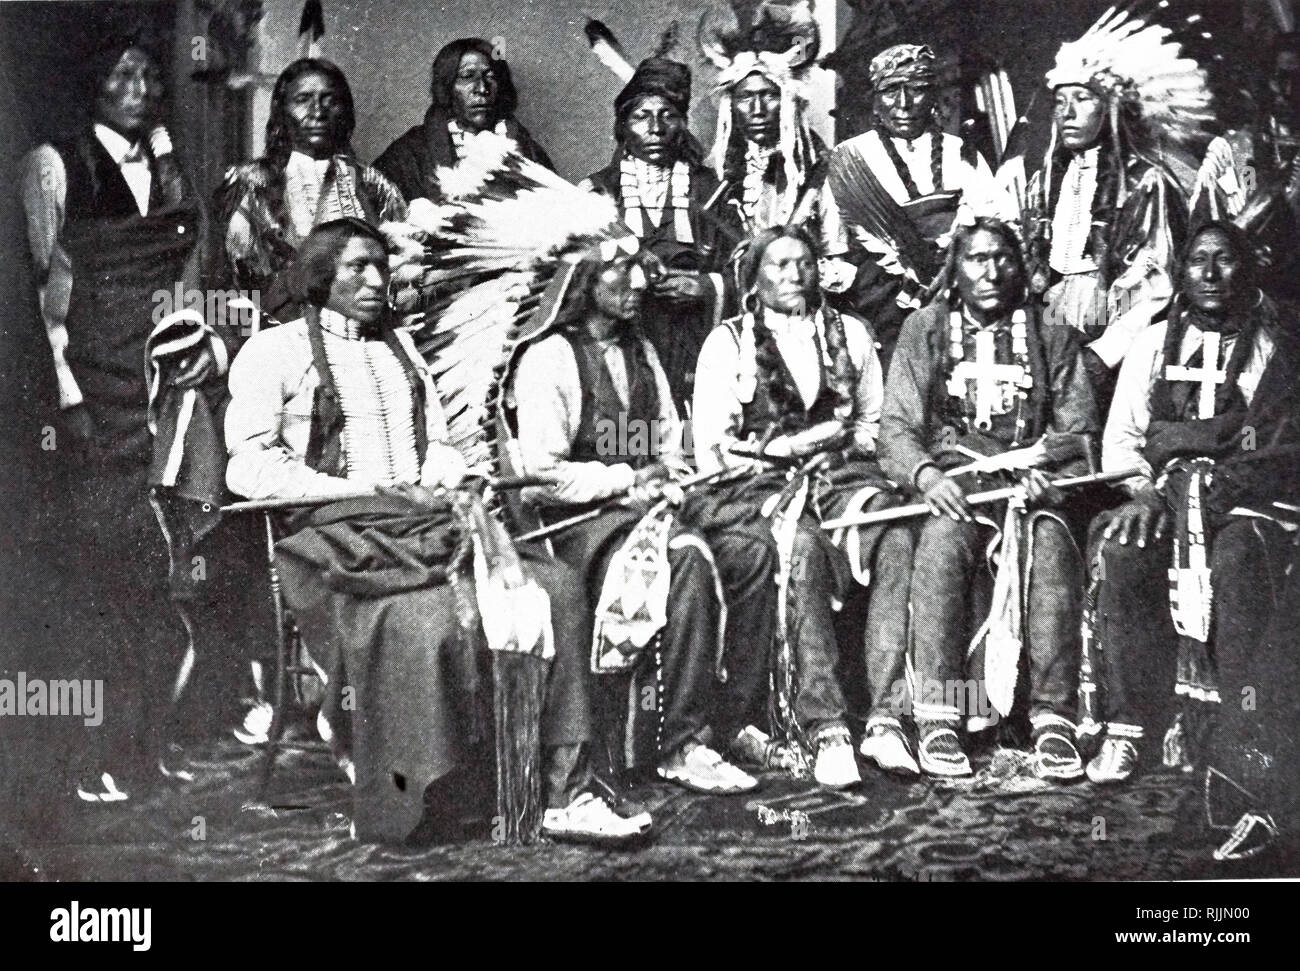 Photographie de chefs Sioux dans l'East Room de la Maison Blanche. Photo a été prise par Mathew Brady (1822-1896) L'un des premiers photographes de l'histoire américaine. En date du 19e siècle Banque D'Images